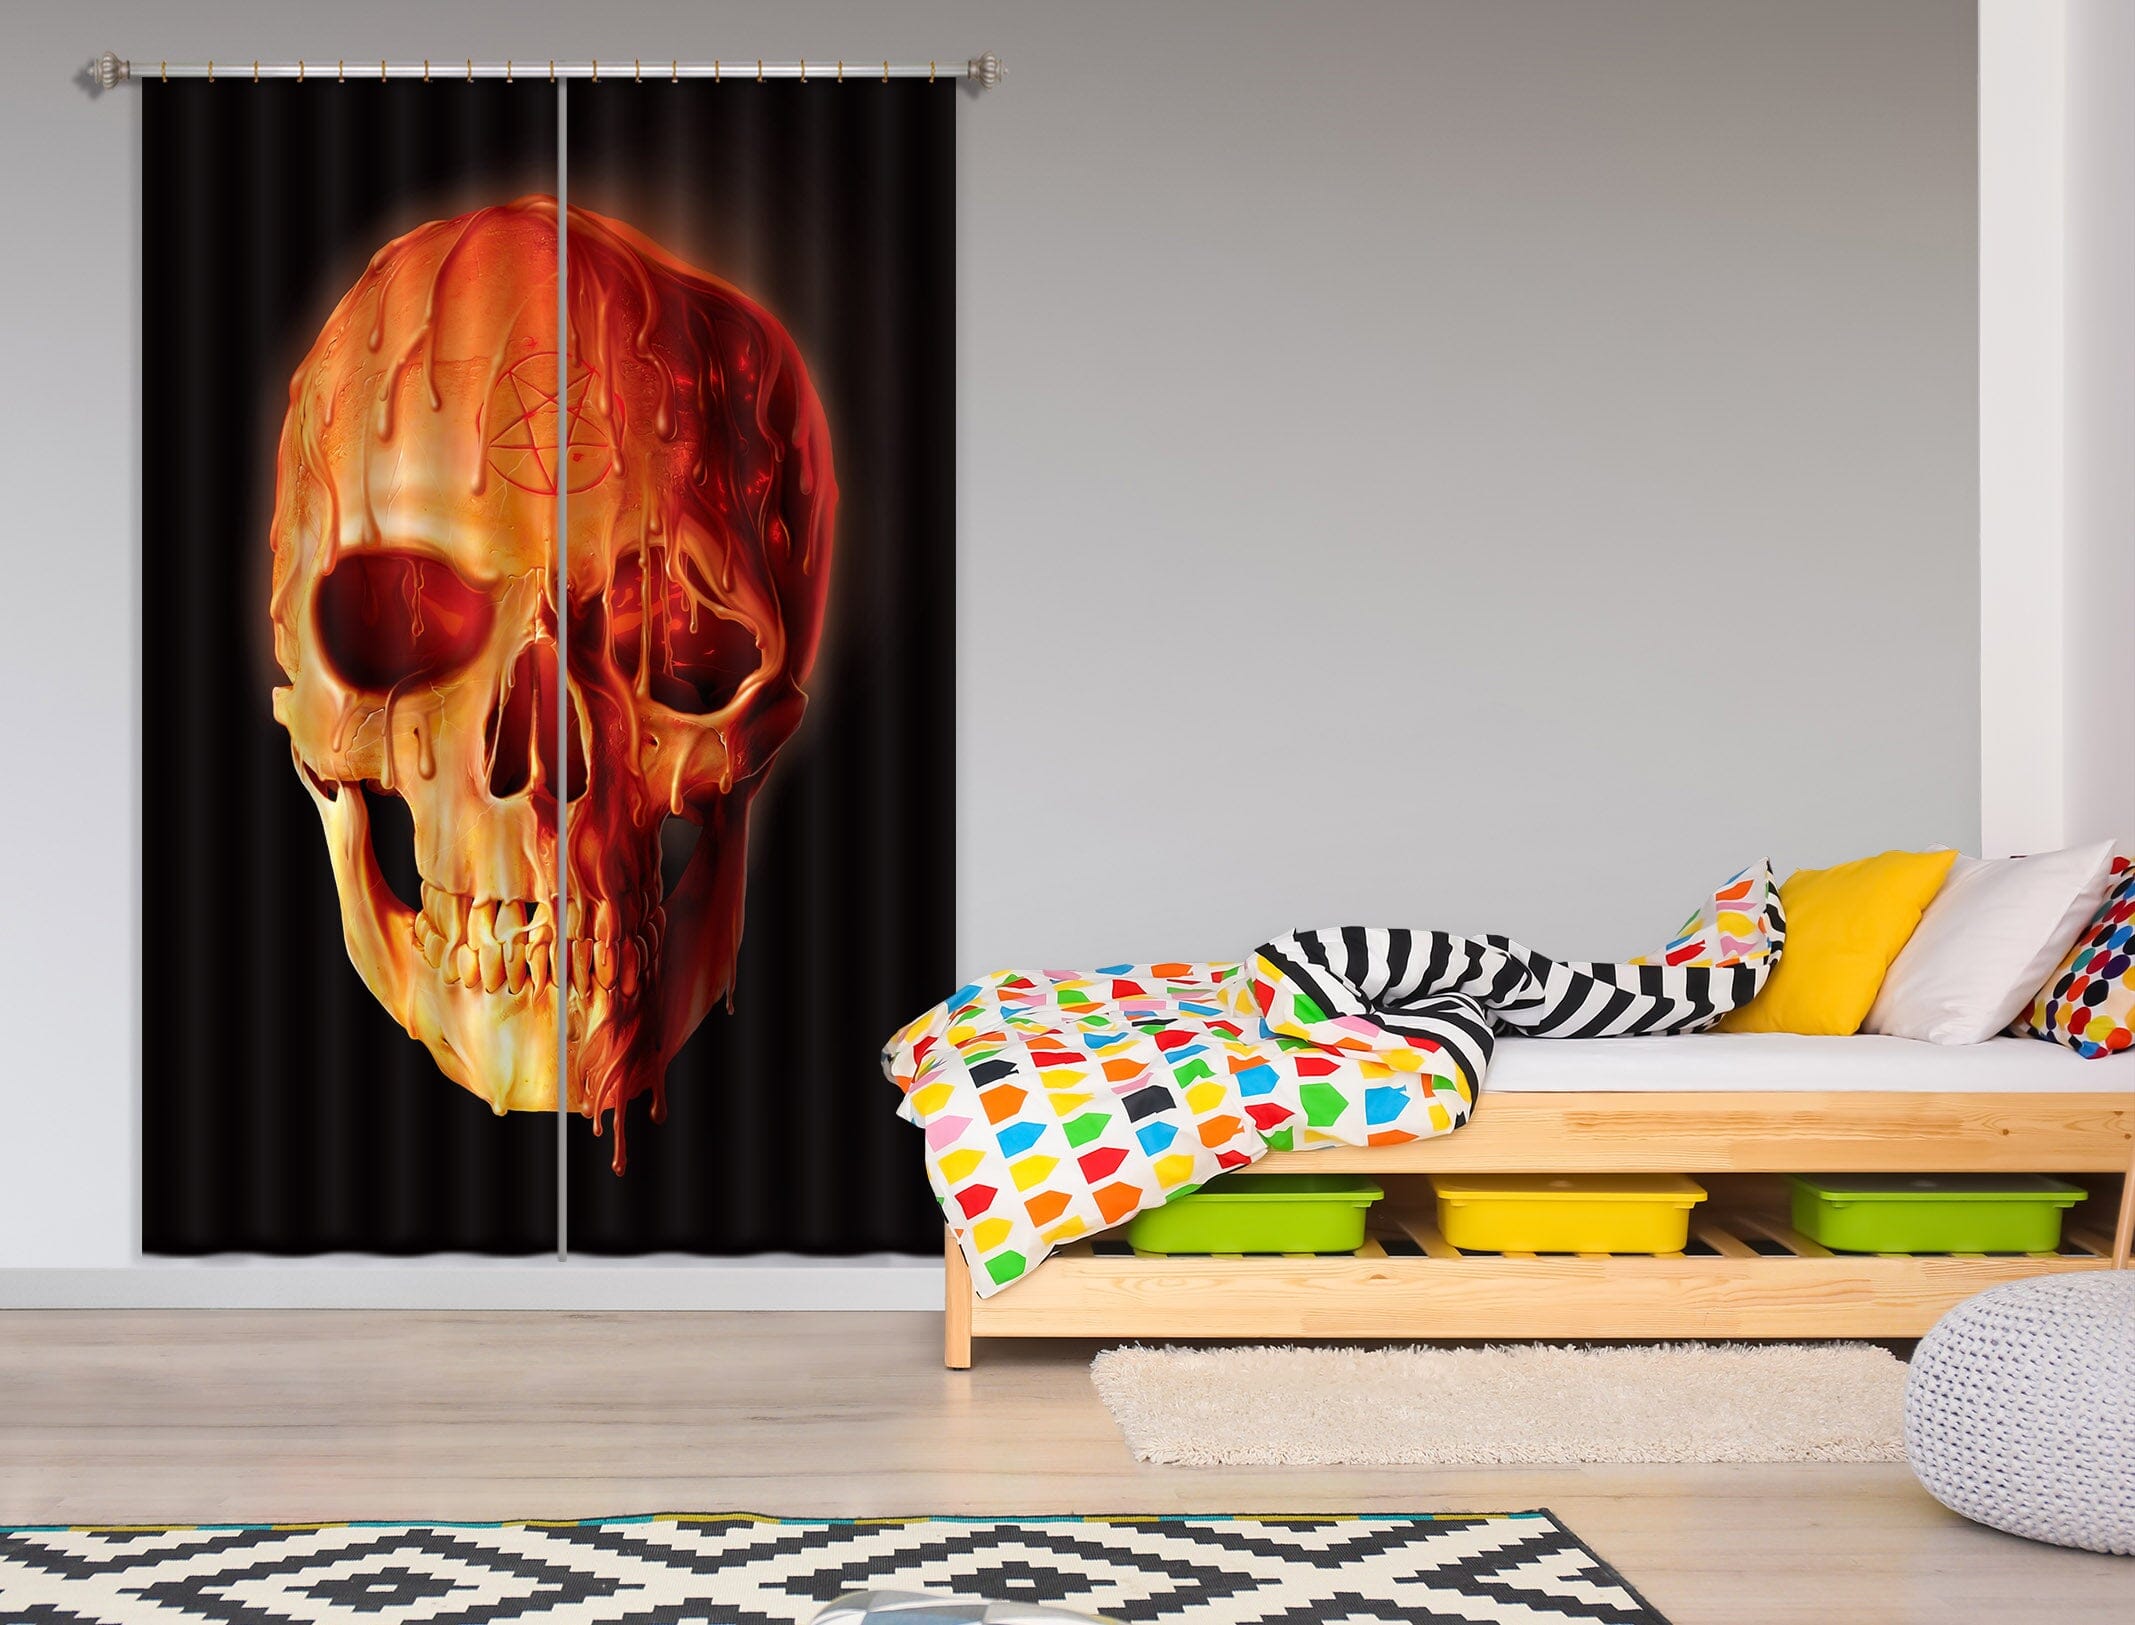 3D Wax Skull 091 Vincent Hie Curtain Curtains Drapes Curtains AJ Creativity Home 